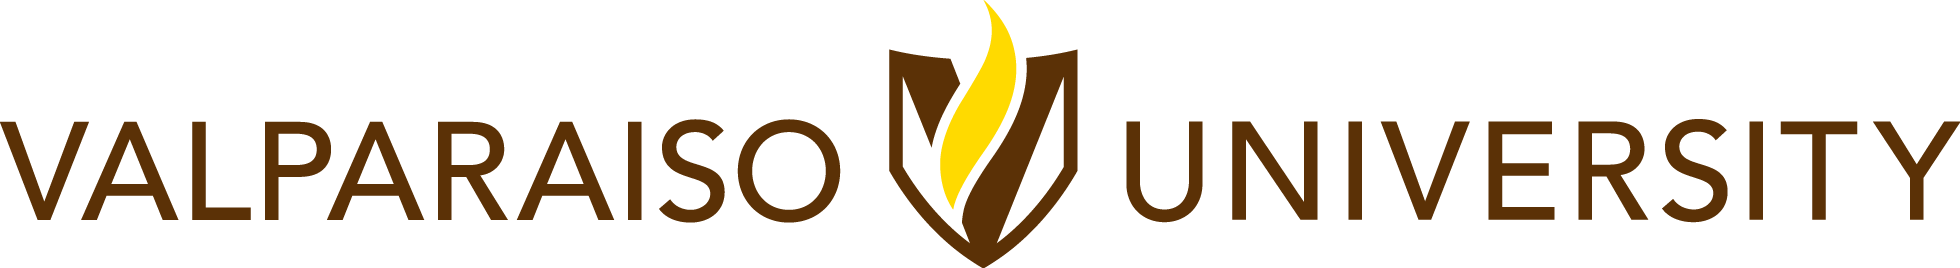 Valparaiso Crusaders Logo - Our Logos | Valparaiso University Brand